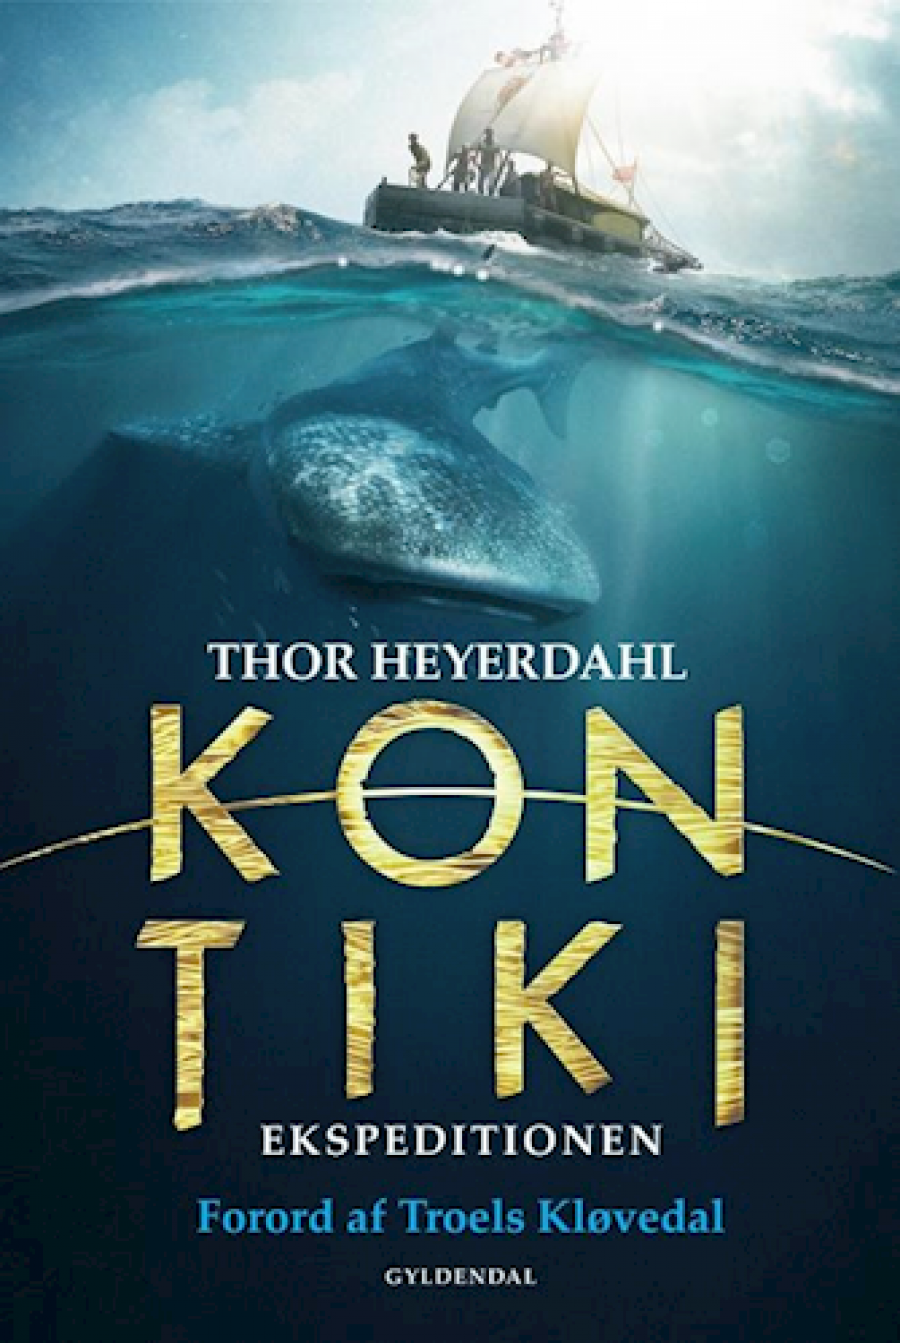 Forside til bogen Kon-Tiki ekspeditionen af Thor Heyerdahl